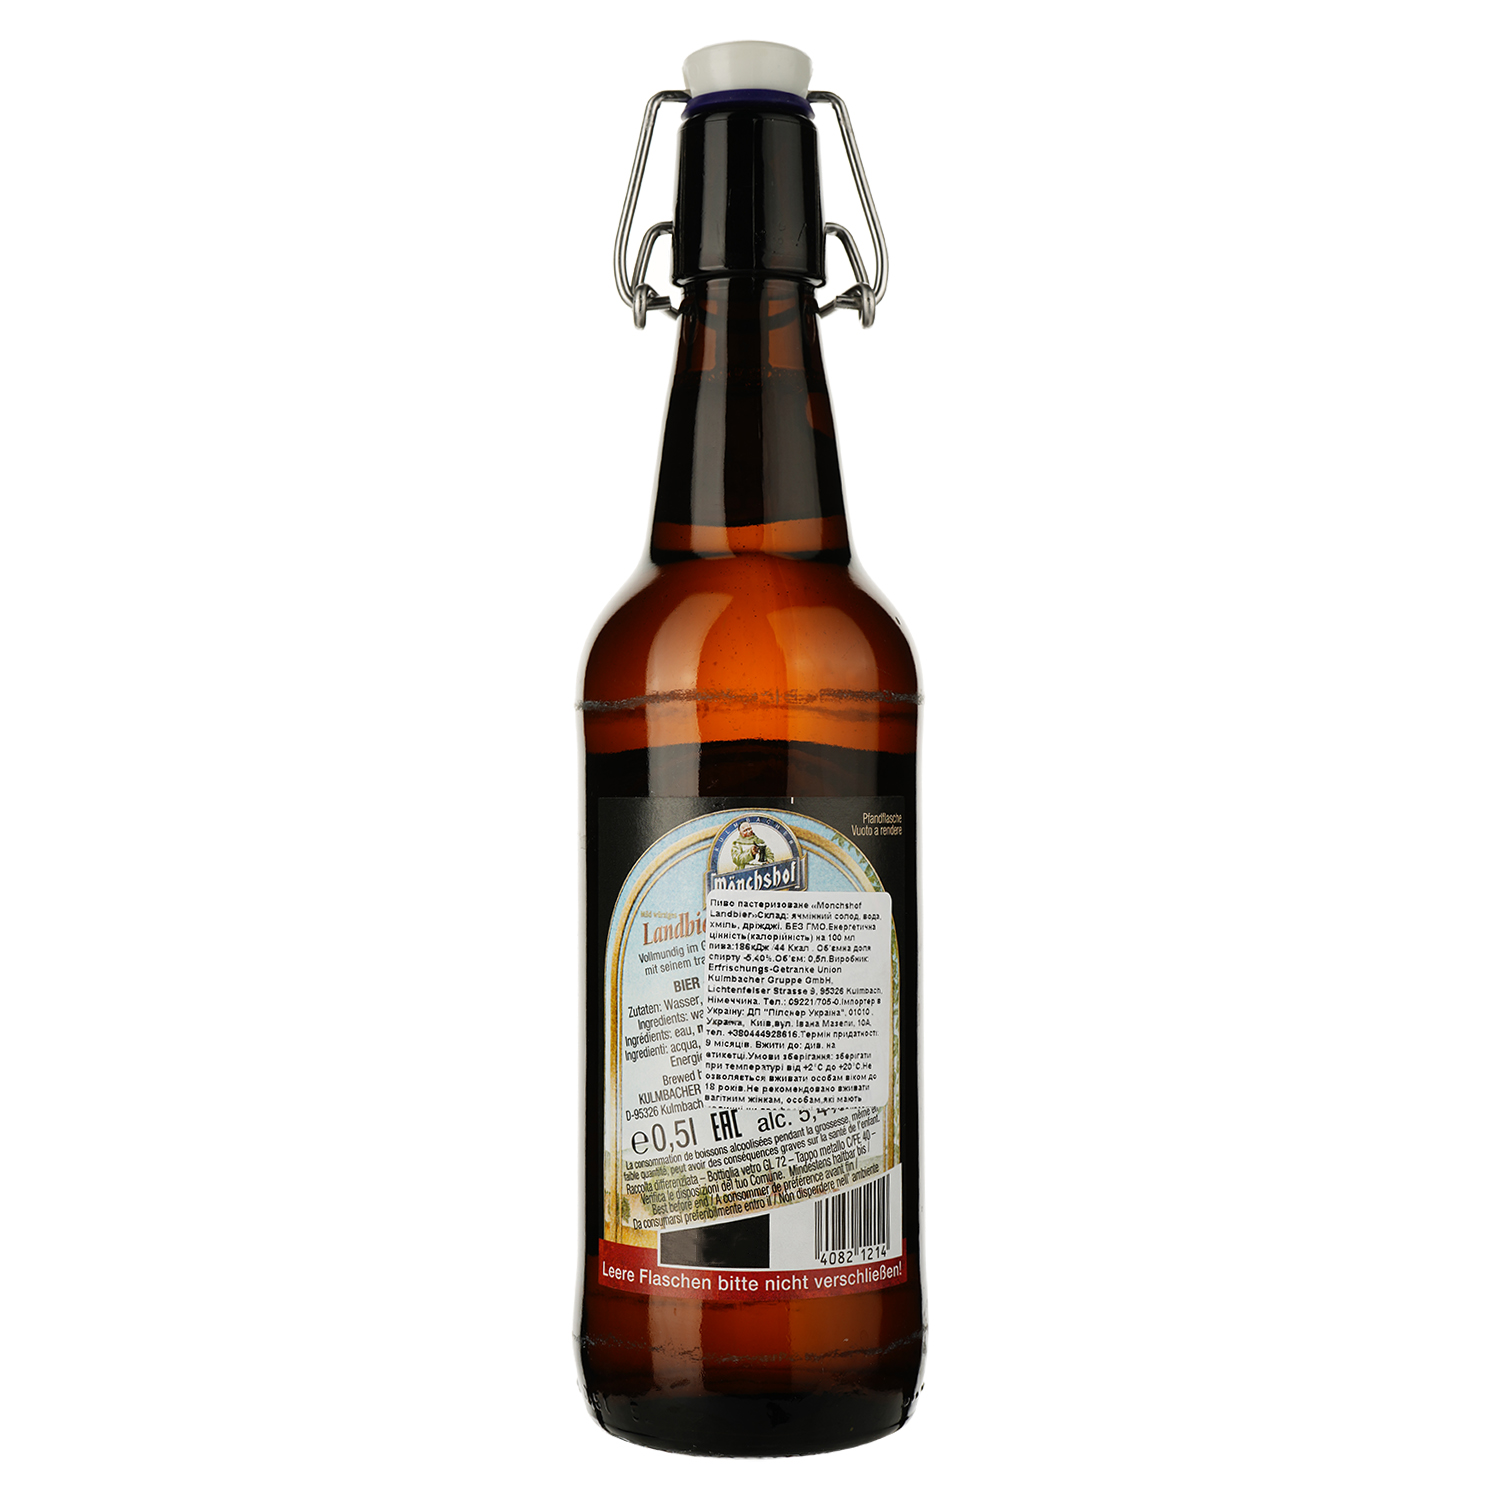 Пиво Monchshof Landbier светлое, 5.4%, 0.5 л - фото 2